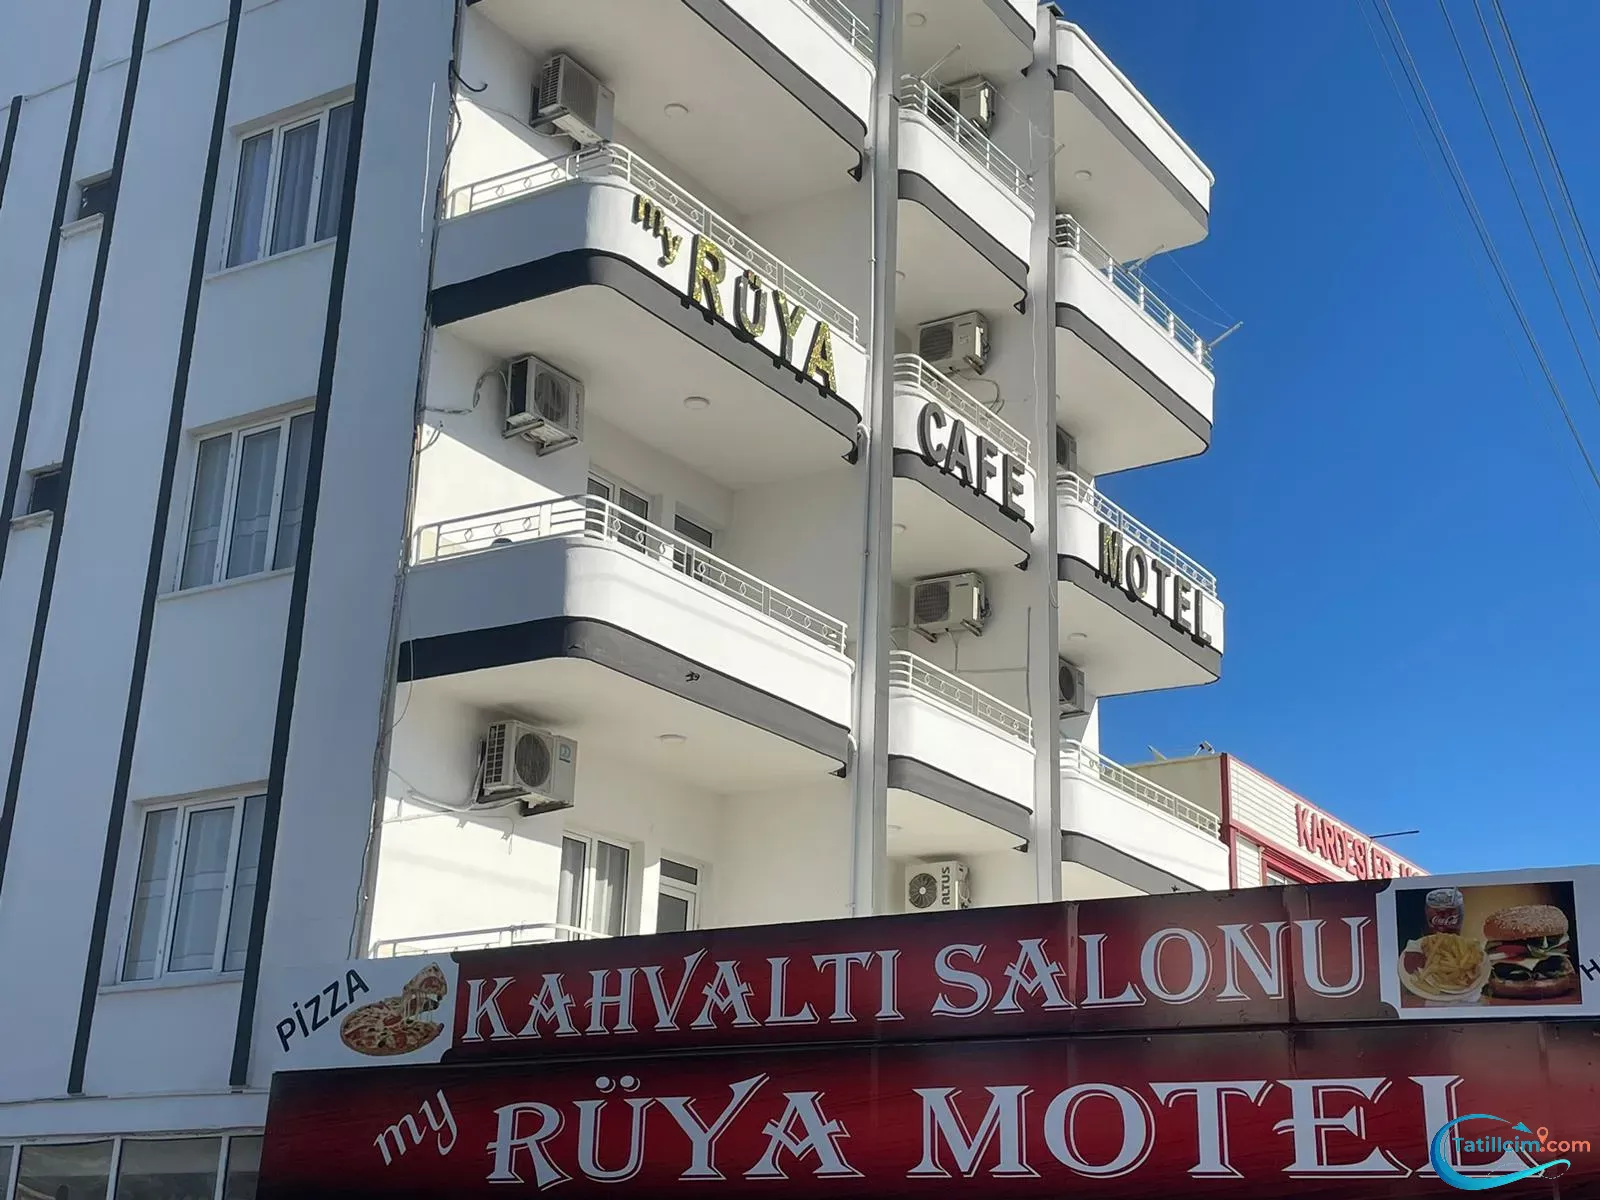 My Rüya Motel